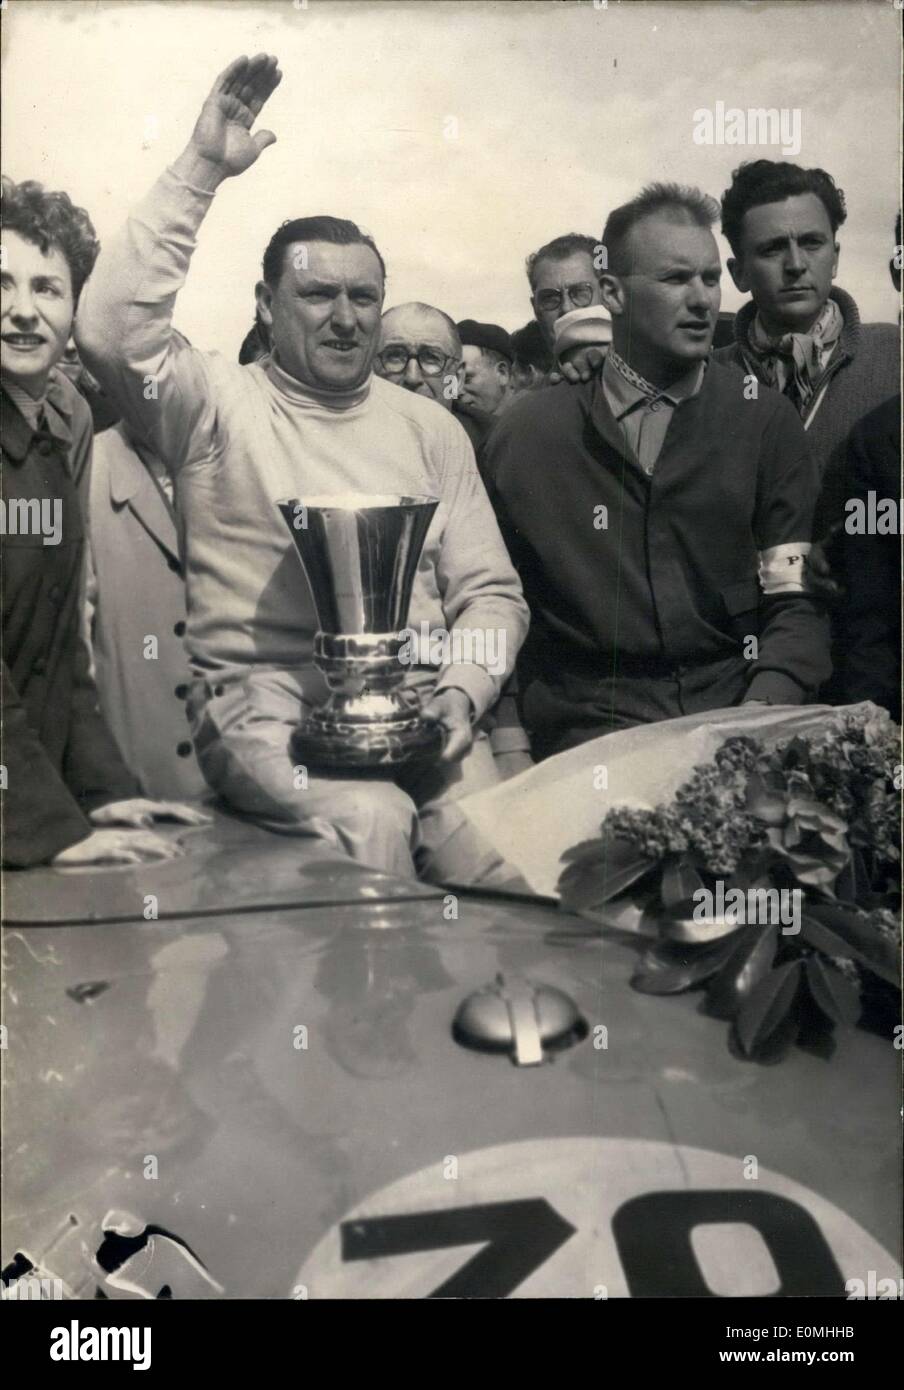 16 mai 1955 - Veuillet-Olivier (Conduire une Porsche) gagner la course de 24 heures de Paris à Monthlery : Veuillet (à gauche) et son coéquipier, Olivier après leur victoire dans l'e' l'heure de l'automobile Paris race, à Monthlery voie hier. Banque D'Images